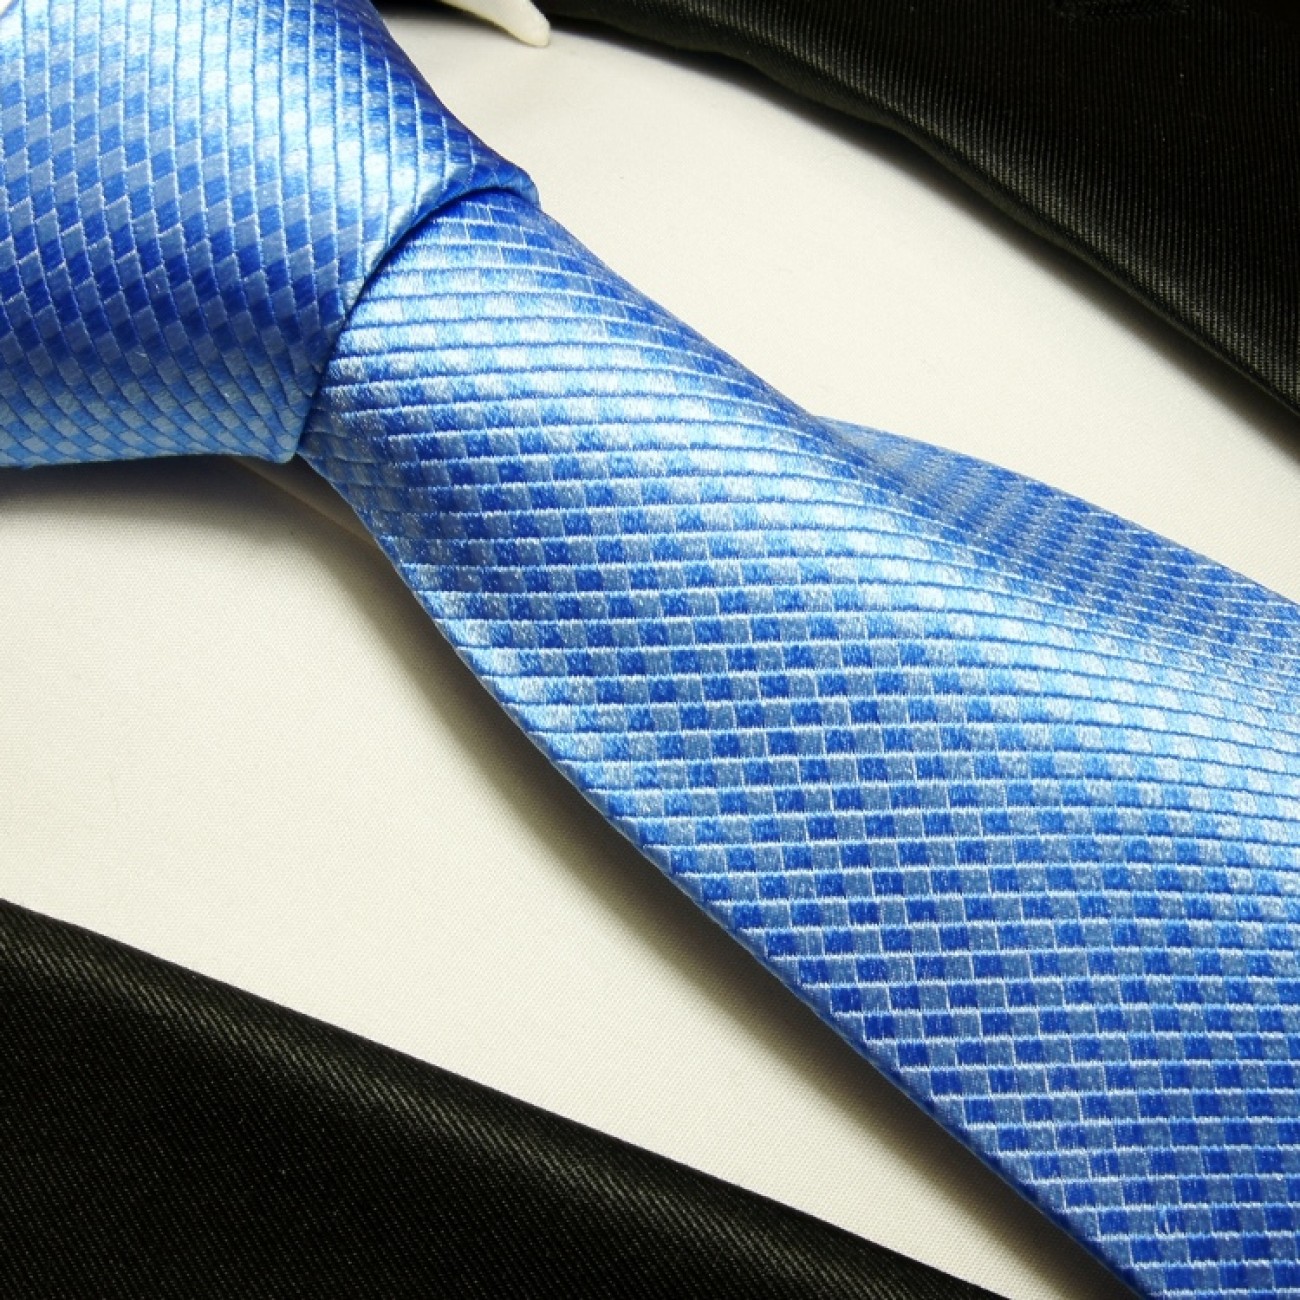 Extra langes Krawatten Set blau 3tlg. 100% Seide + Einstecktuch + Manschettenknöpfe by Paul Malone 502